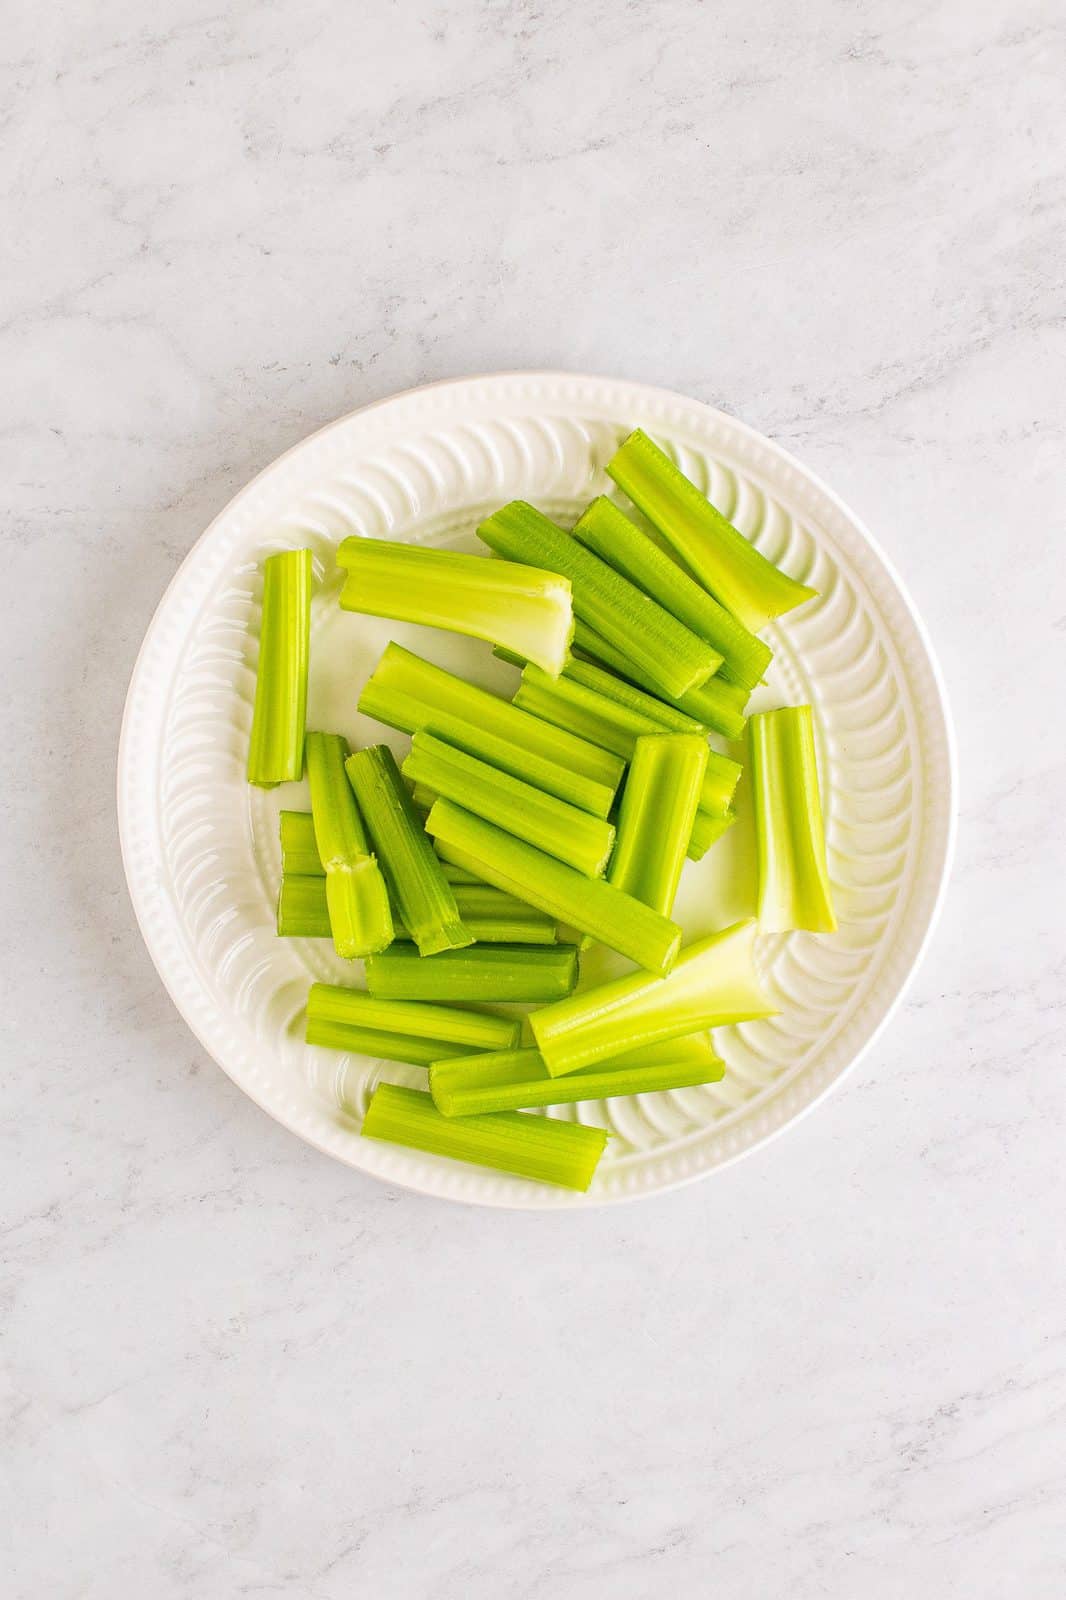 Sliced celery sticks on white plate.